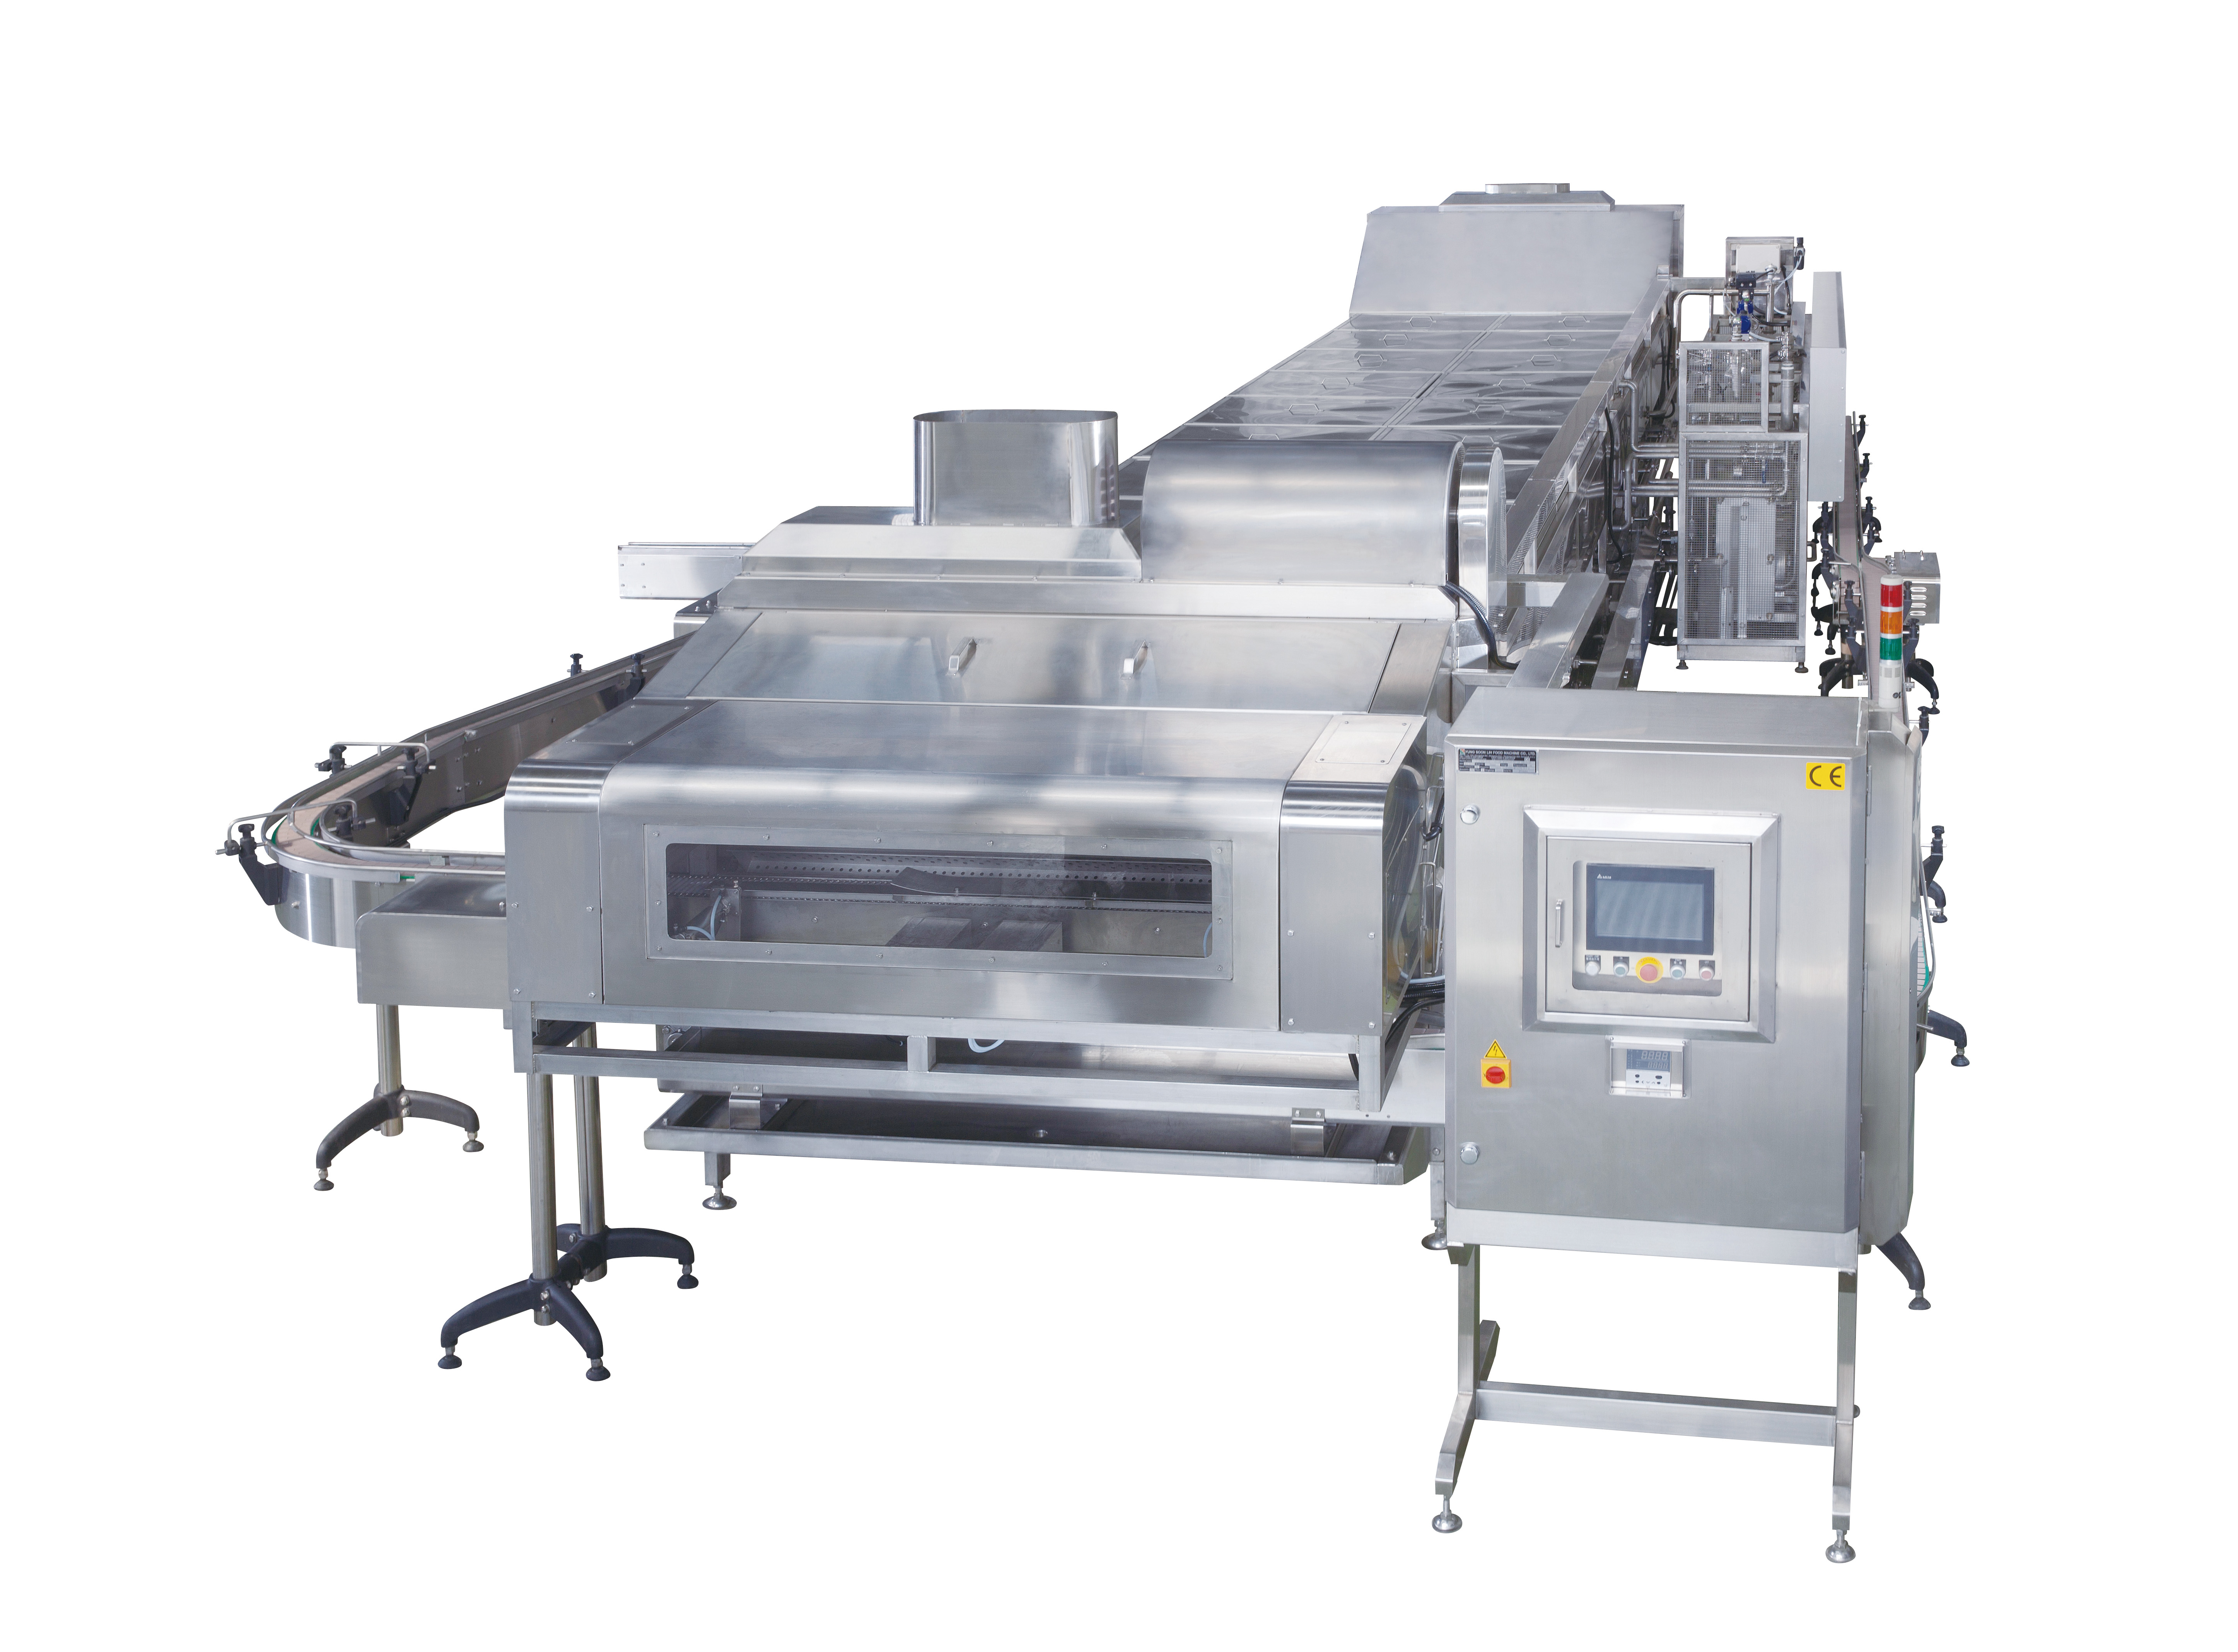 Pasterizacijska i hlađenje oprema je jedna od mašina u proizvodnoj liniji Douhua.